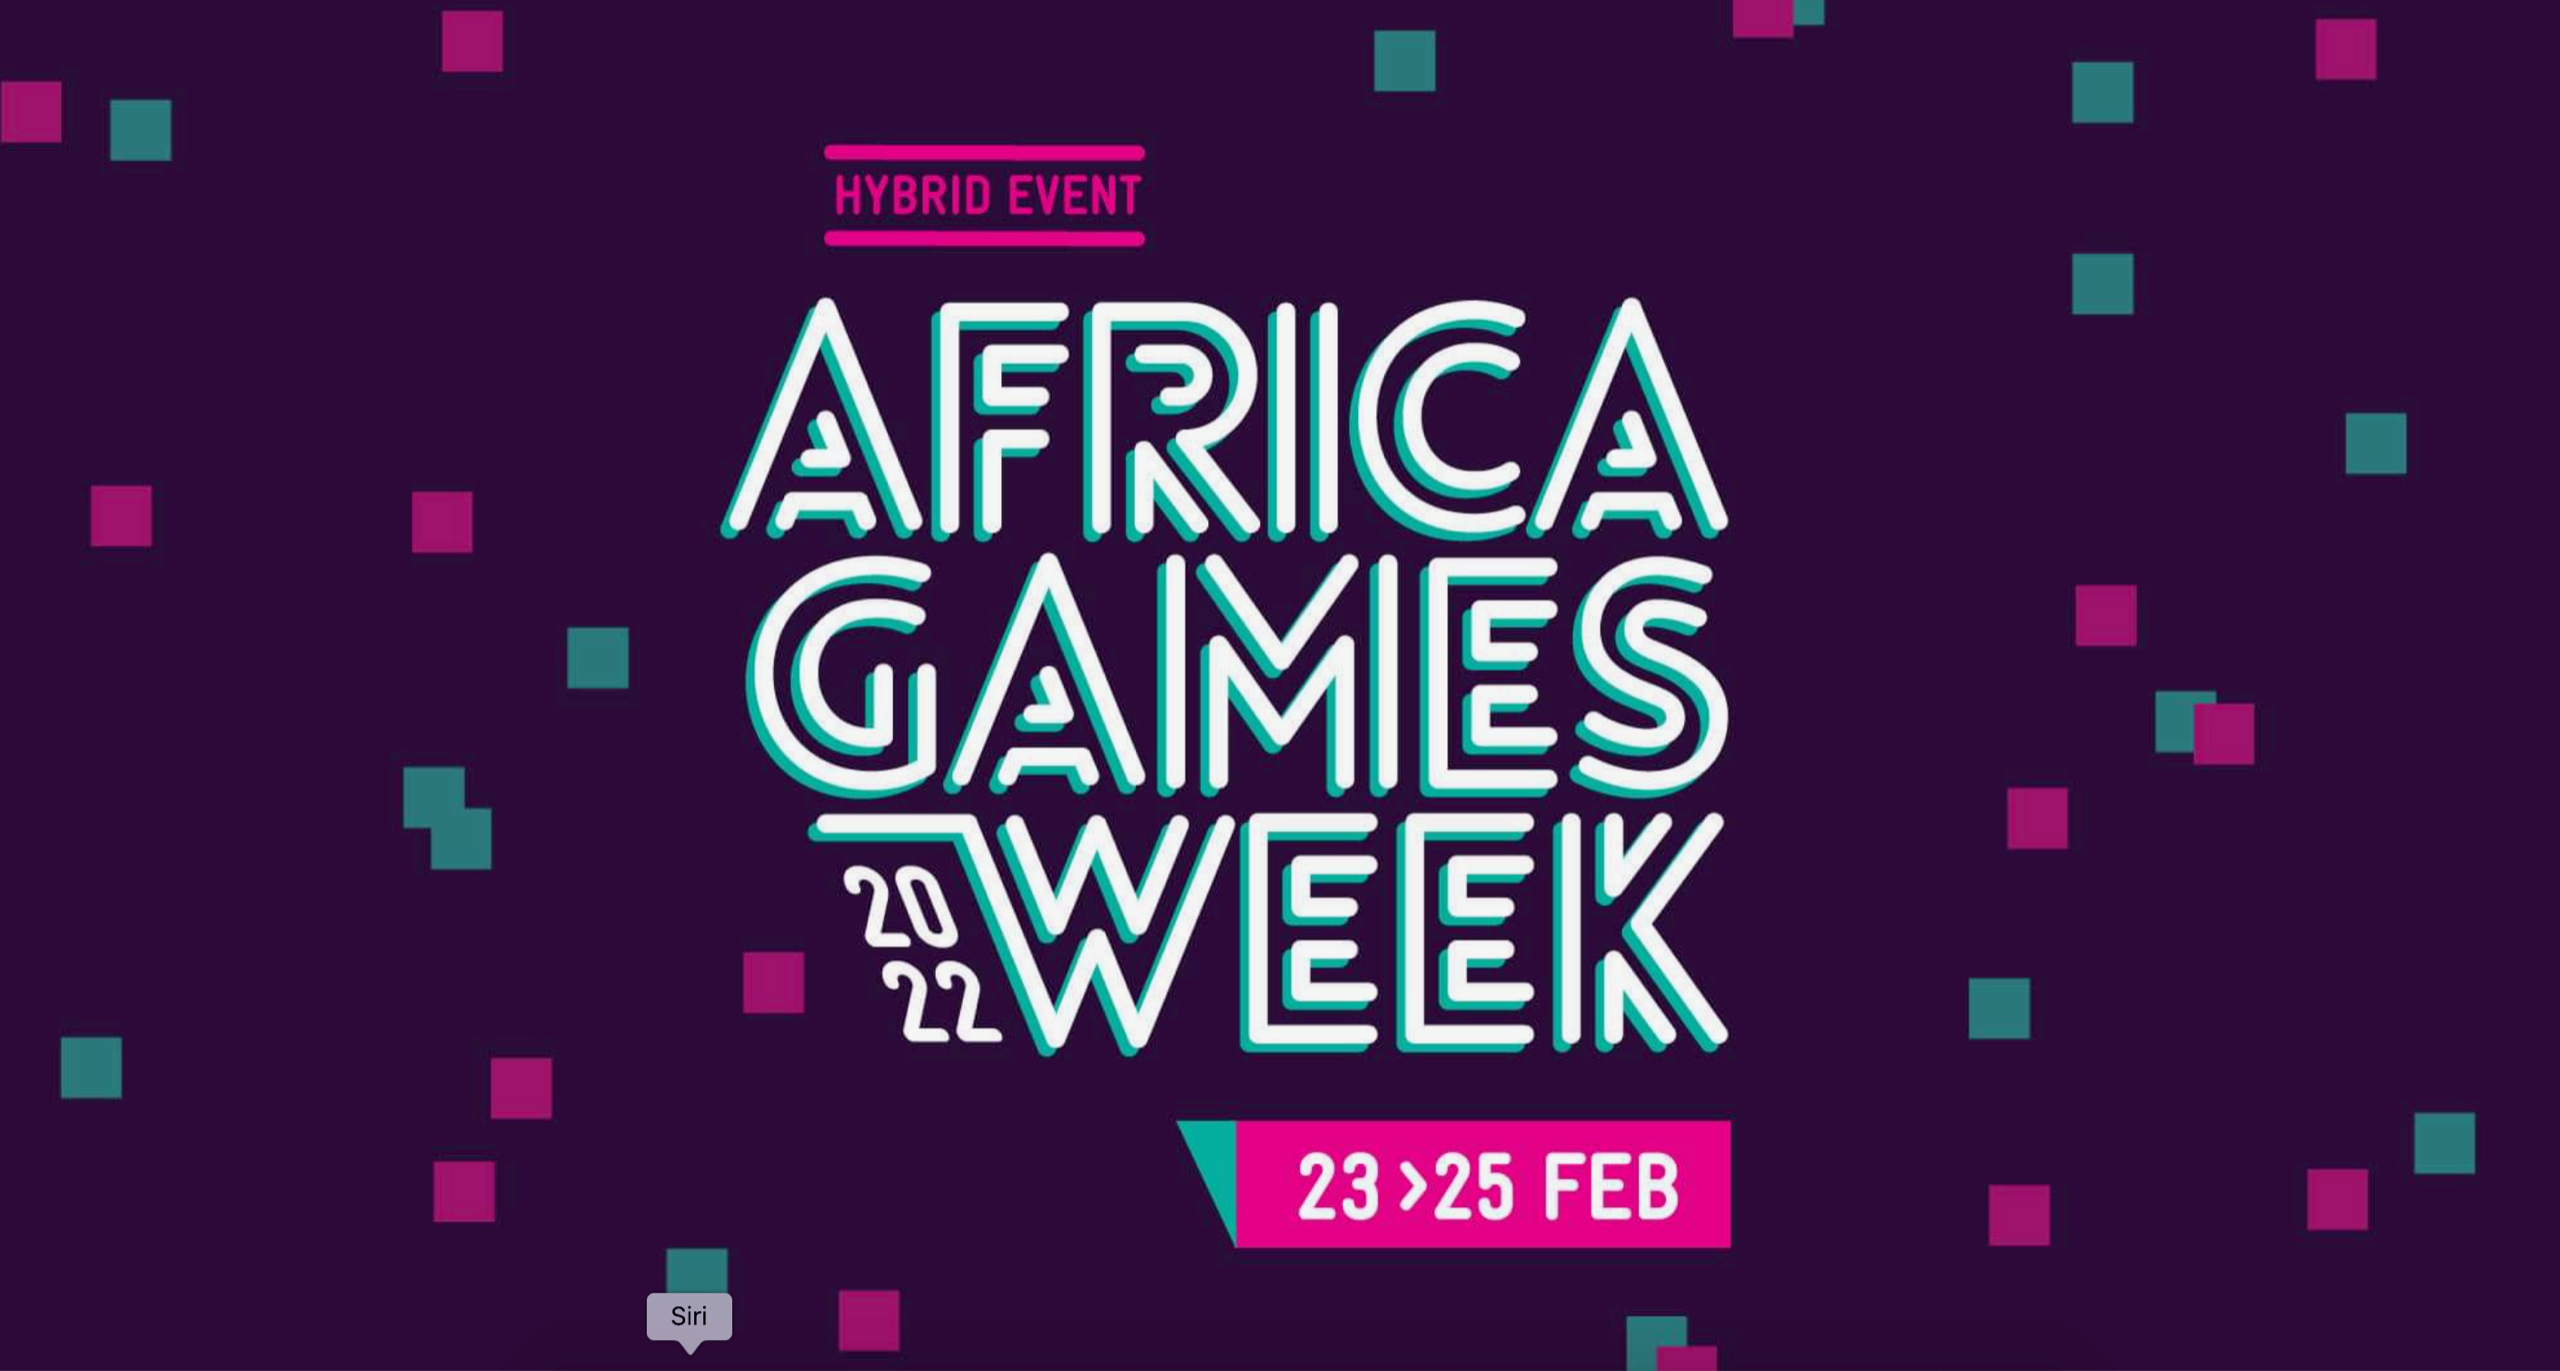 Afrikan suurin pelitapahtuma alkaa huomenna – Africa Games Week järjestetään maailmanlaajuisesti hybridinä